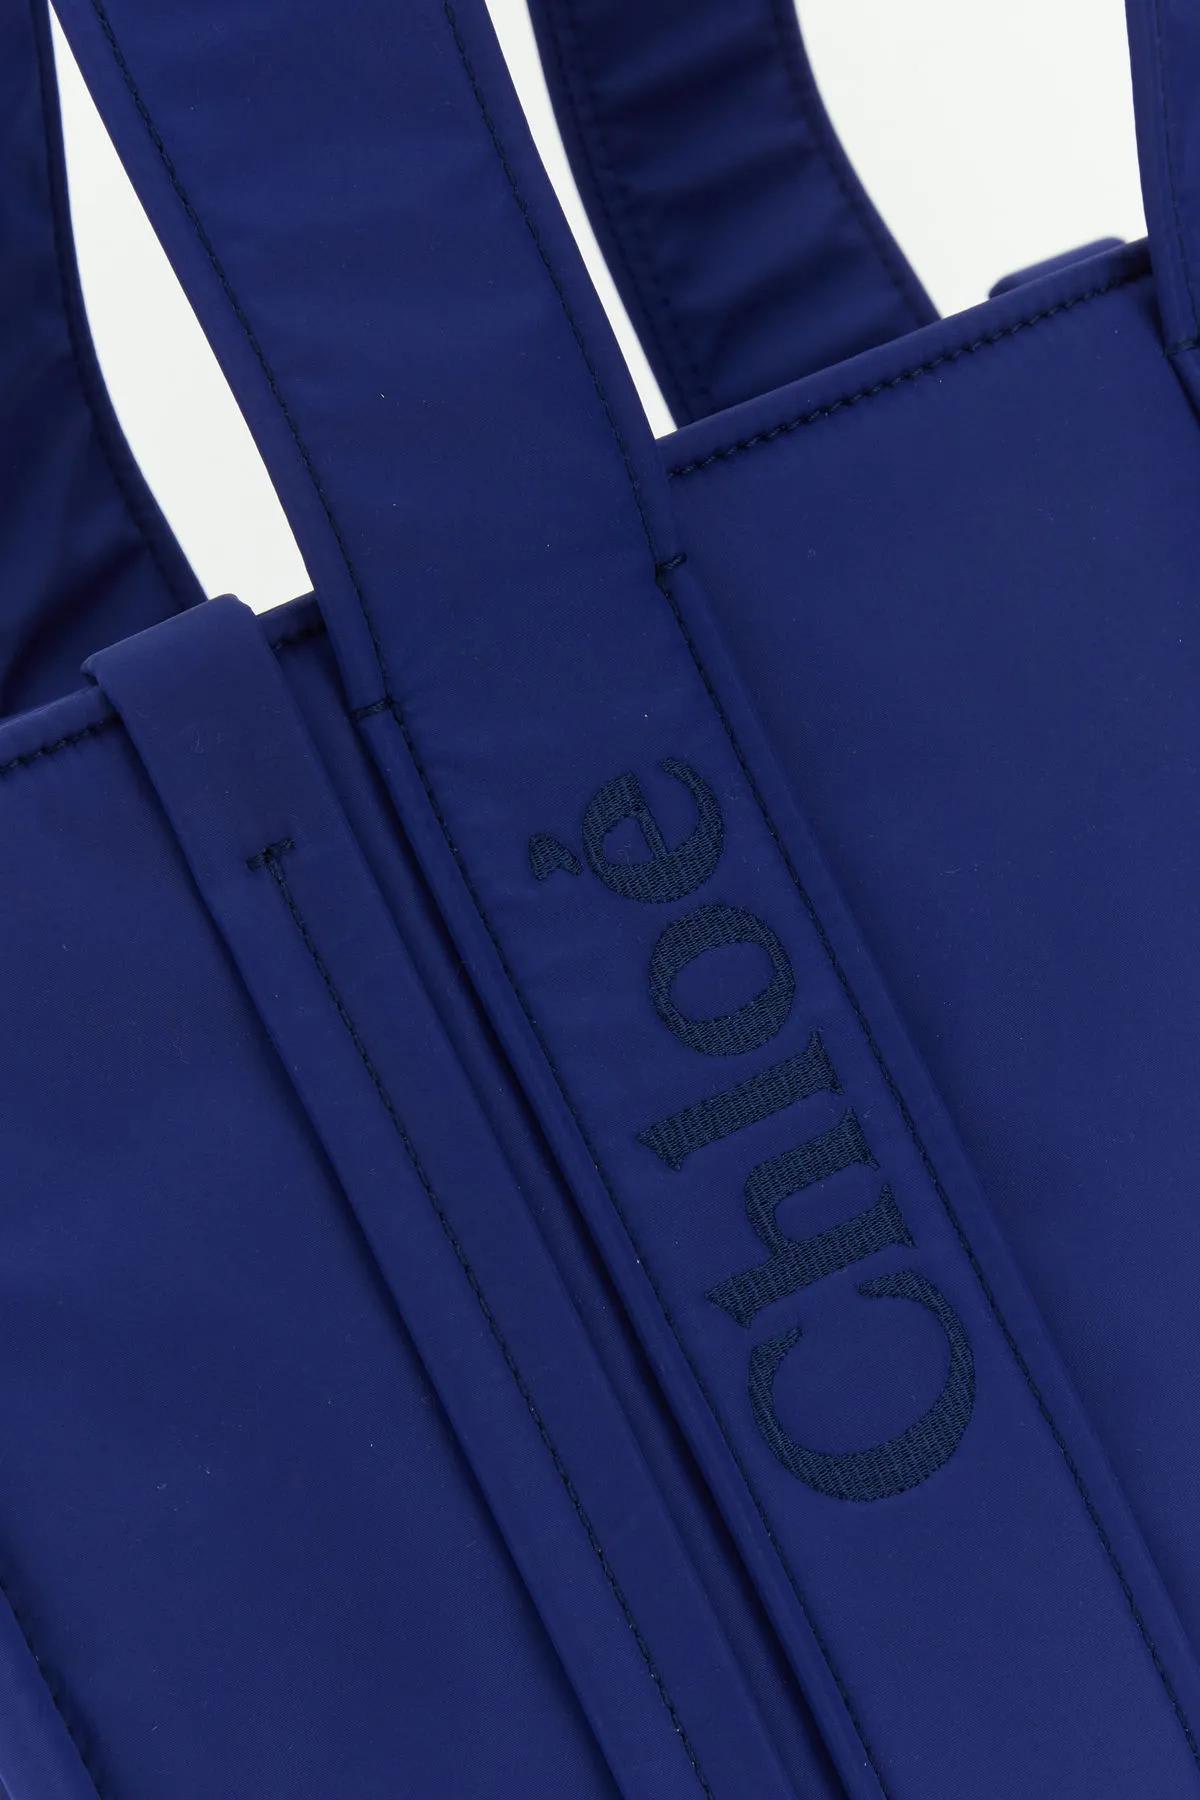 Shop Chloé Electric Blue Nylon Medium Woody Shopping Bag